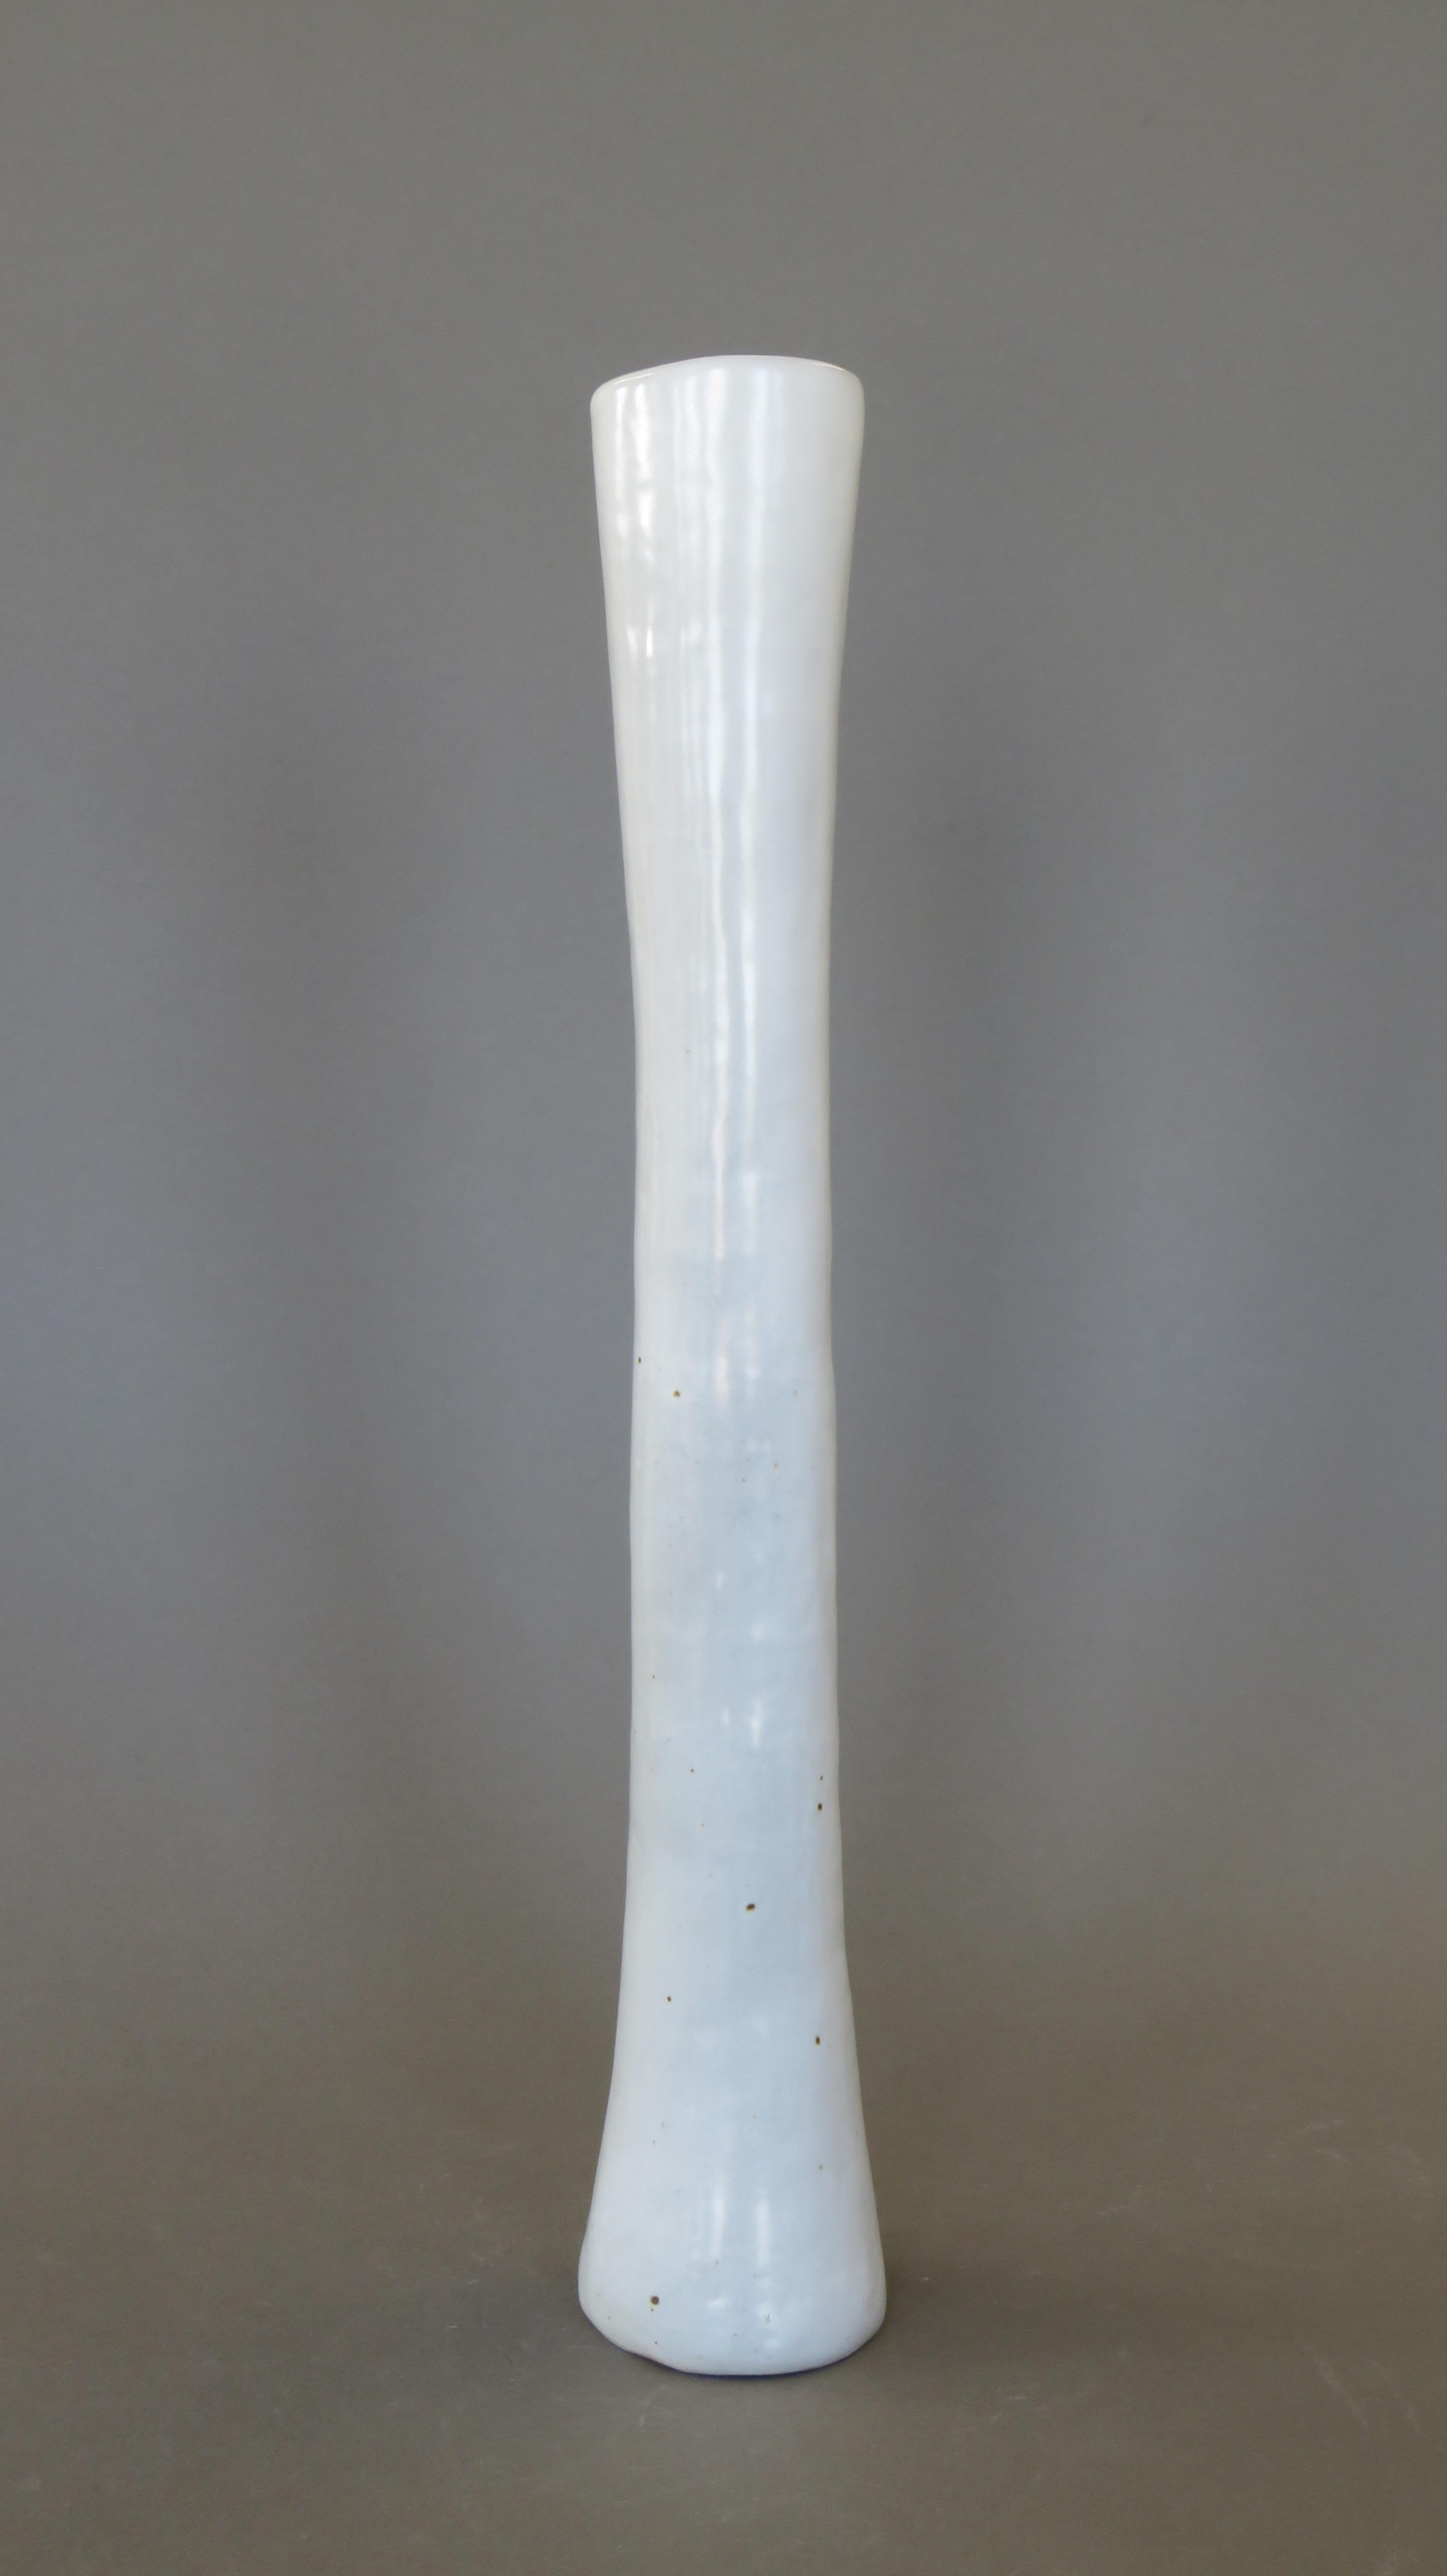 Sehr hohe, skulpturale, handgefertigte weiße Vase.  Diese Serie von Vasen ist eine Untersuchung der funktionalen Skulptur, nicht nur als gewöhnliche Vasen, sondern als echte Statement-Stücke.  Diese länglichen Gefäße, 